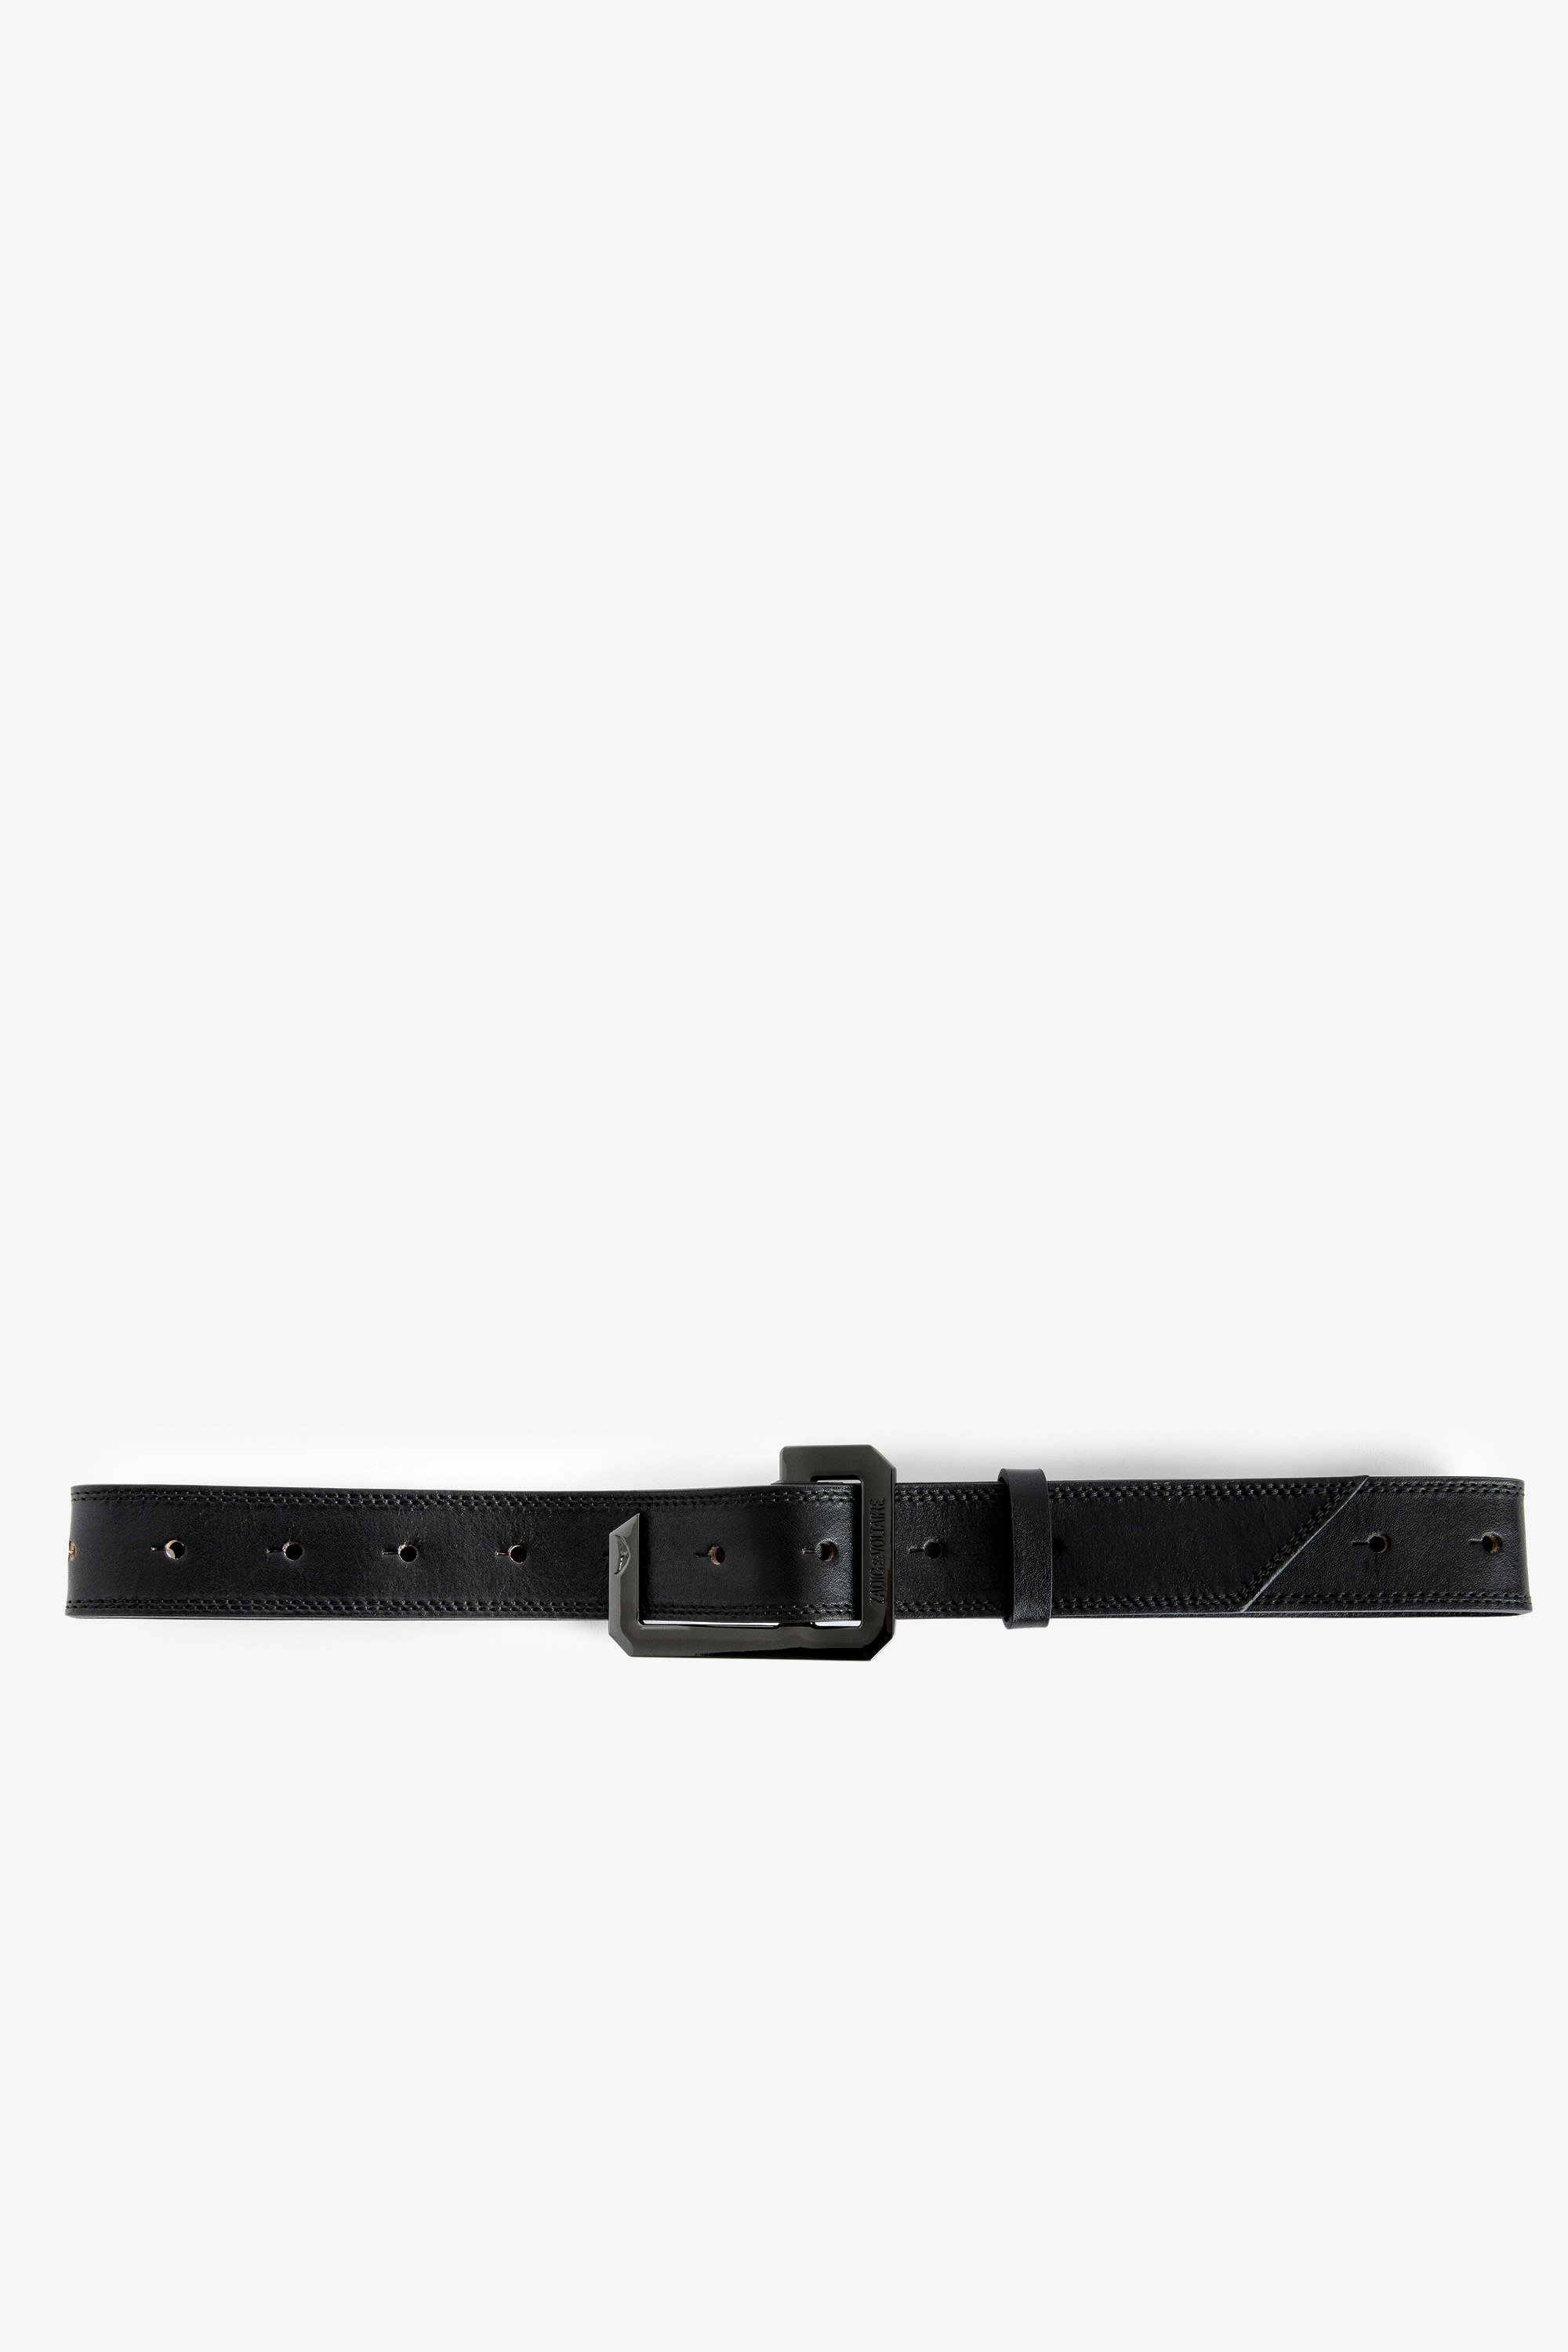 La Cecilia Belt - Adjustable black vegetable-tanned leather belt with C buckle.